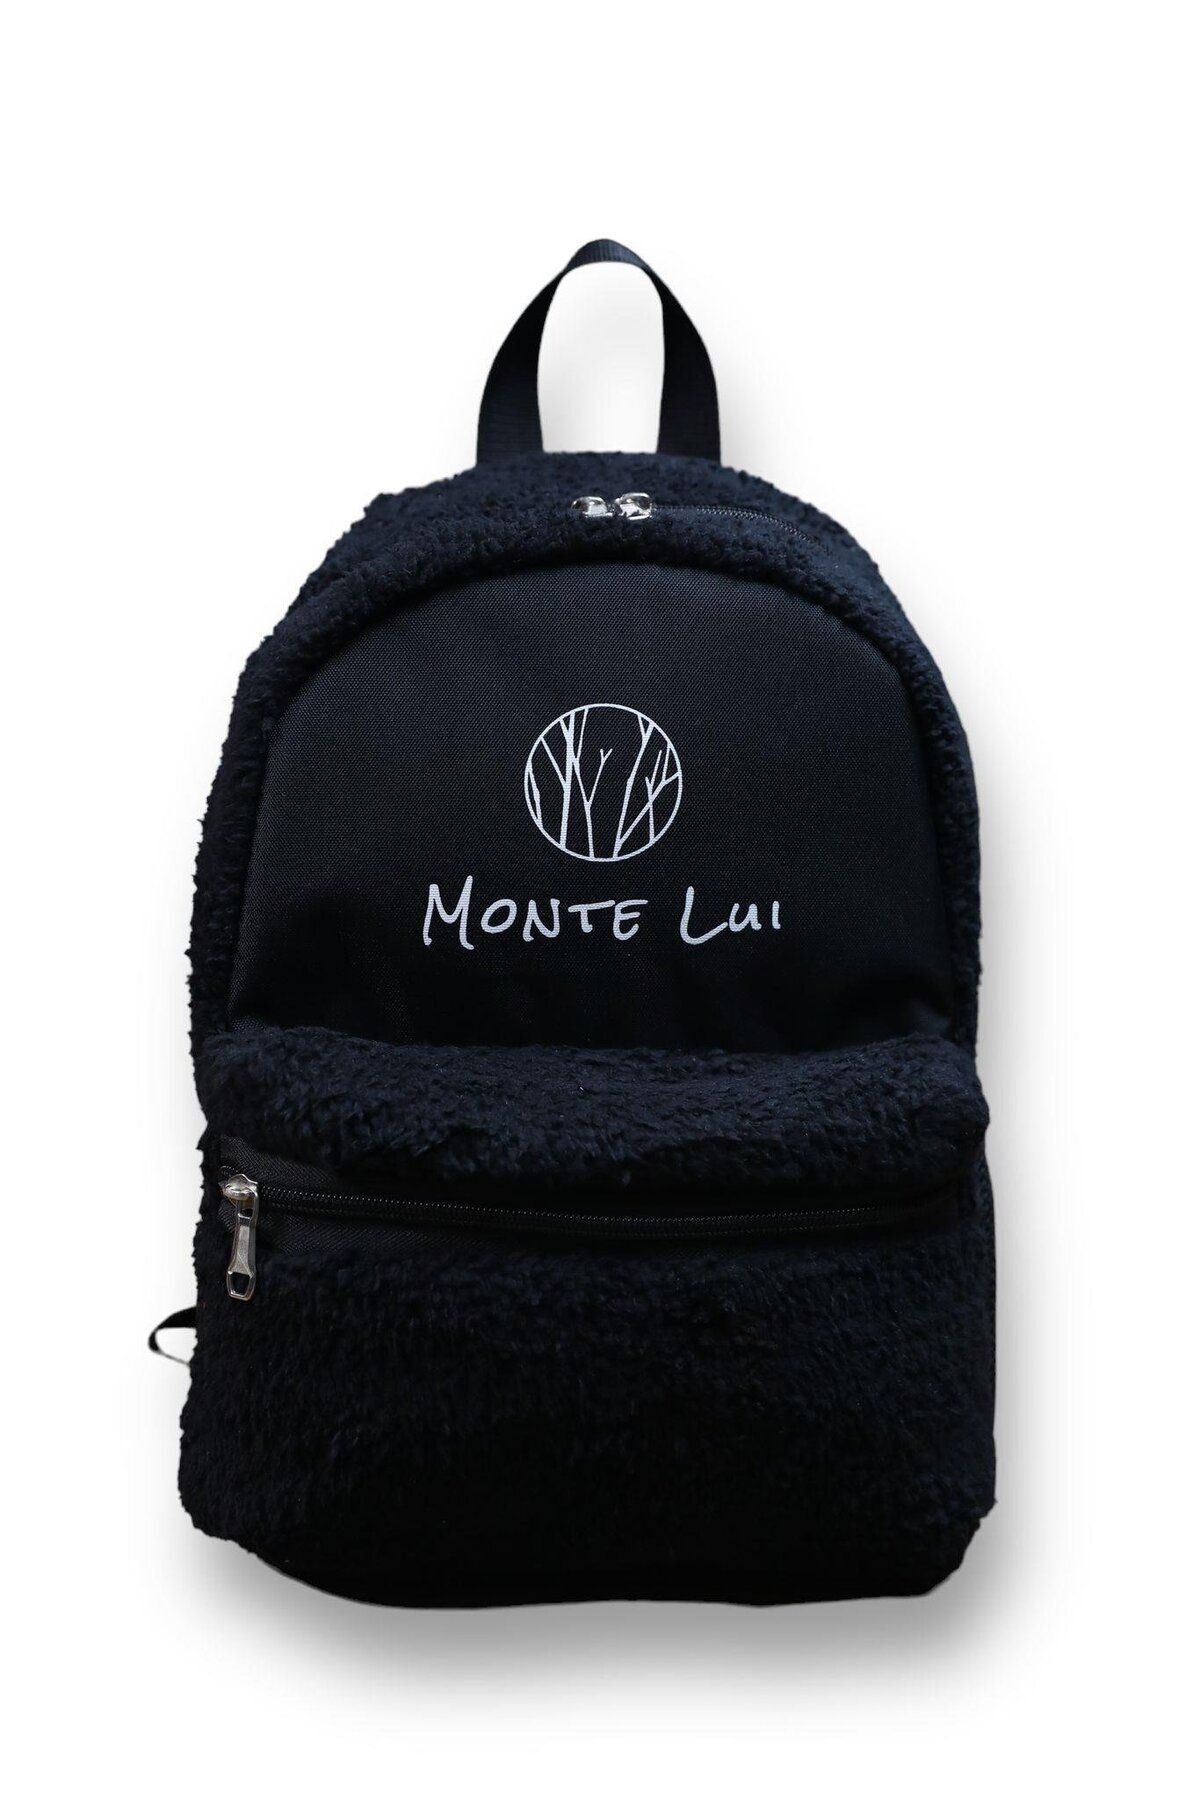 Monte Lui Çanta Modelleri, Mnt3637 Peluş Sırt Çantası Siyah, Kadin Canta, Canta